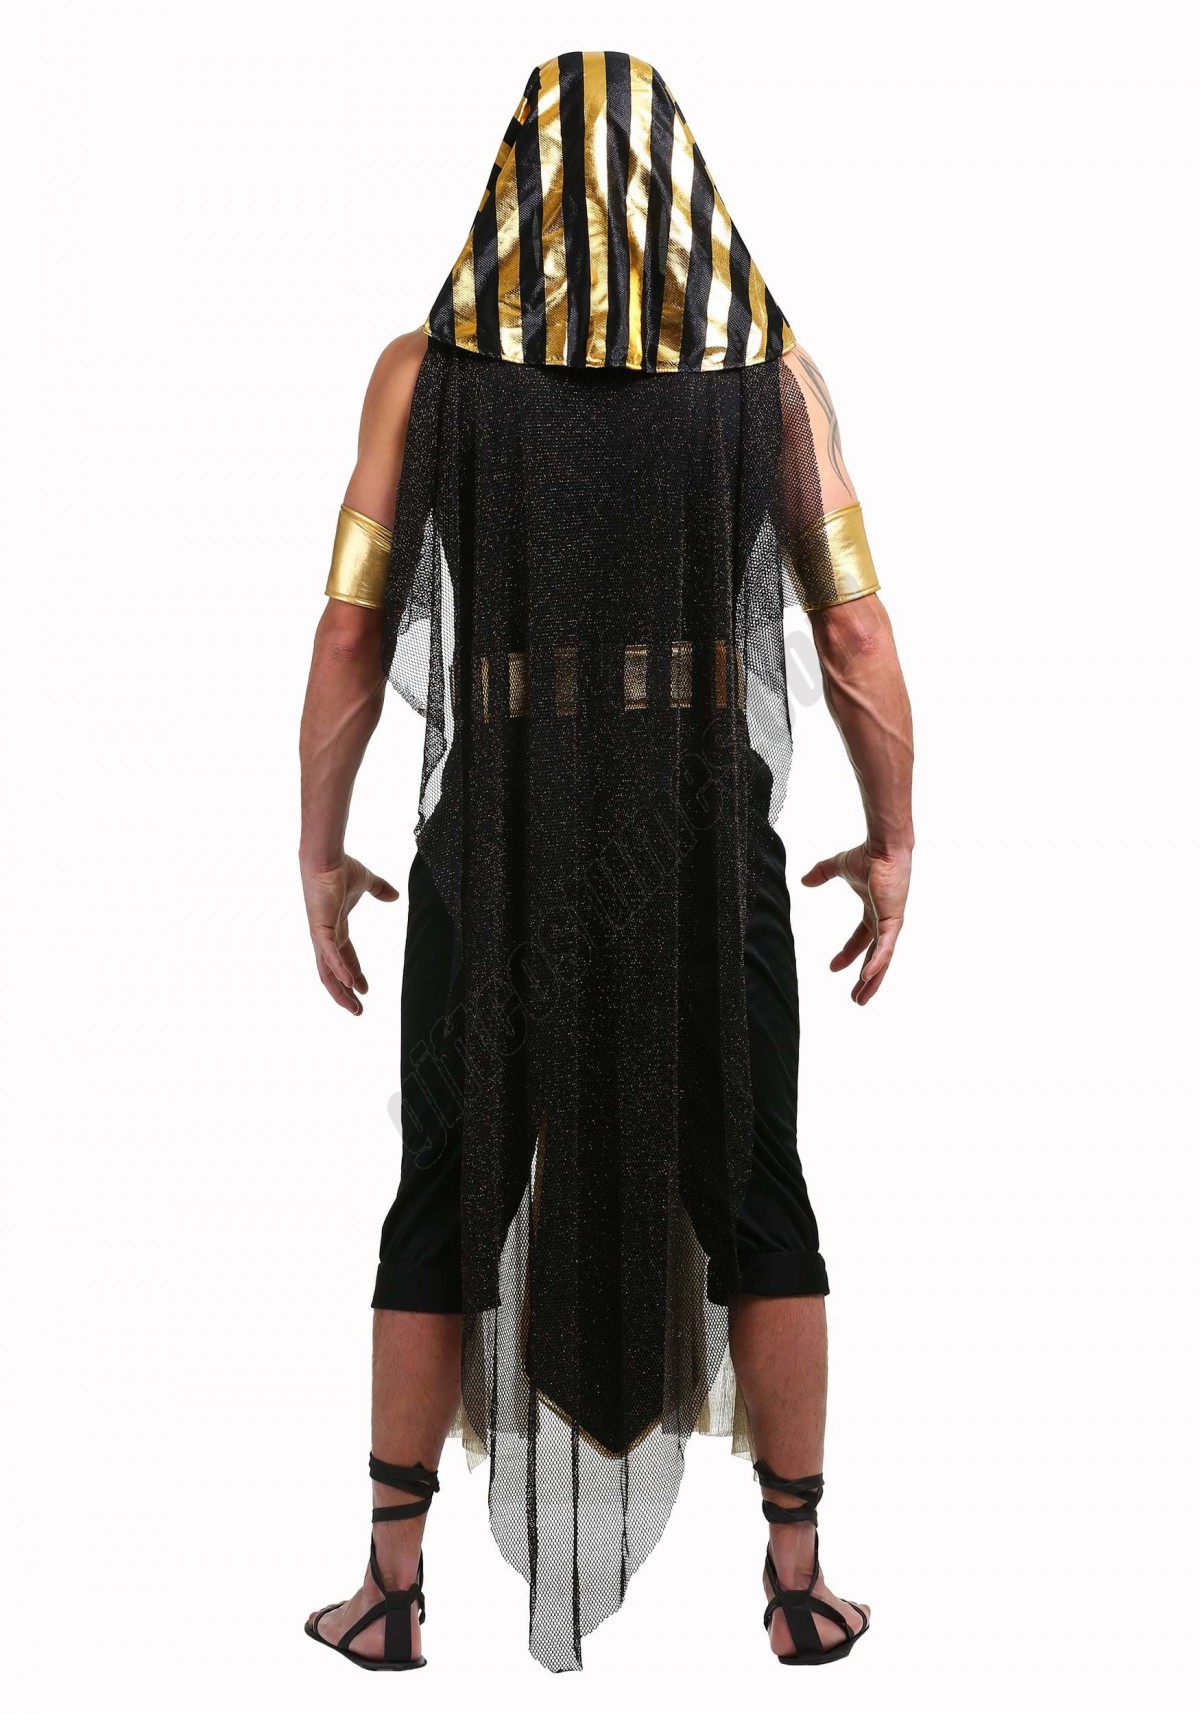 All Powerful Pharaoh Men's Costume - Men's - -1